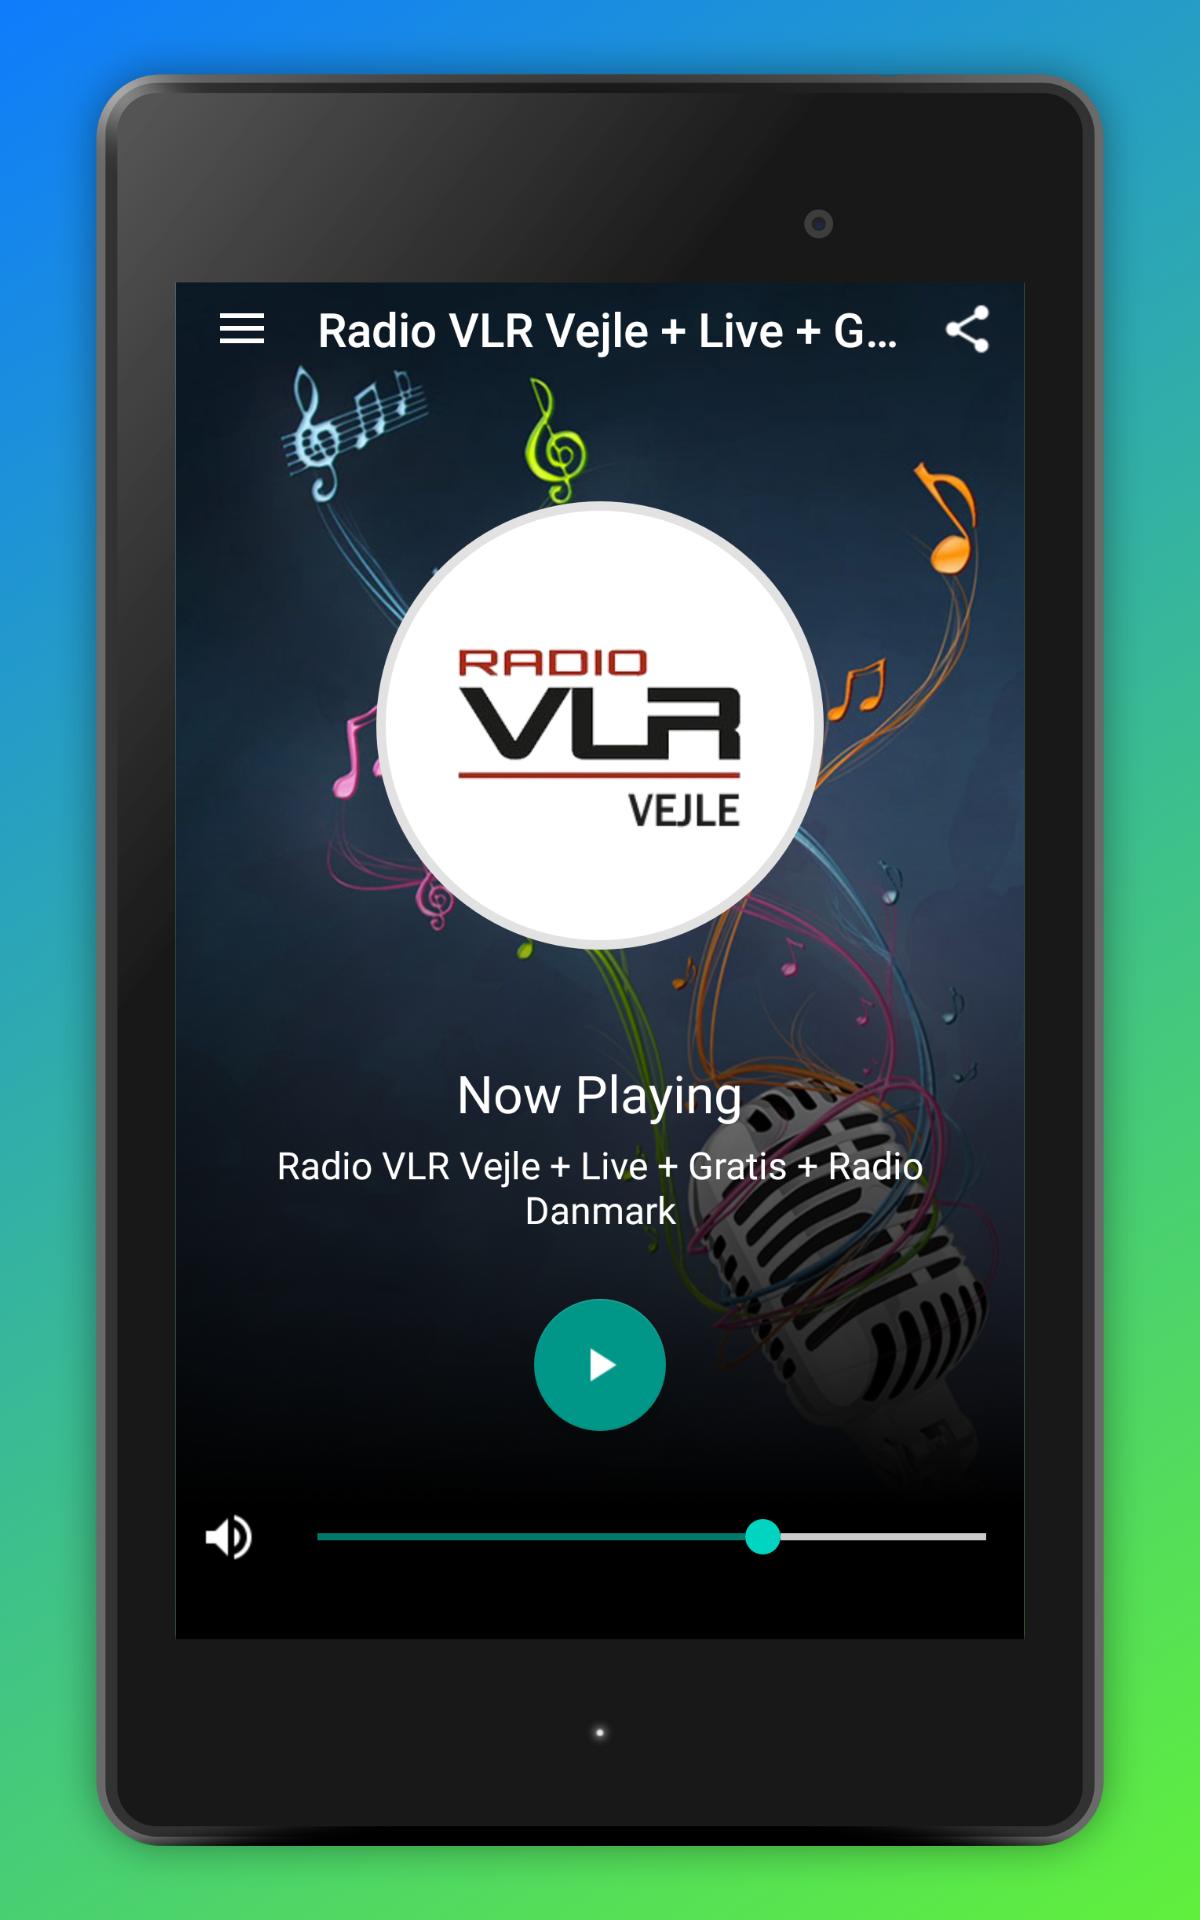 Radio VLR Vejle + Live + Gratis + Radio Danmark for Android - APK Download